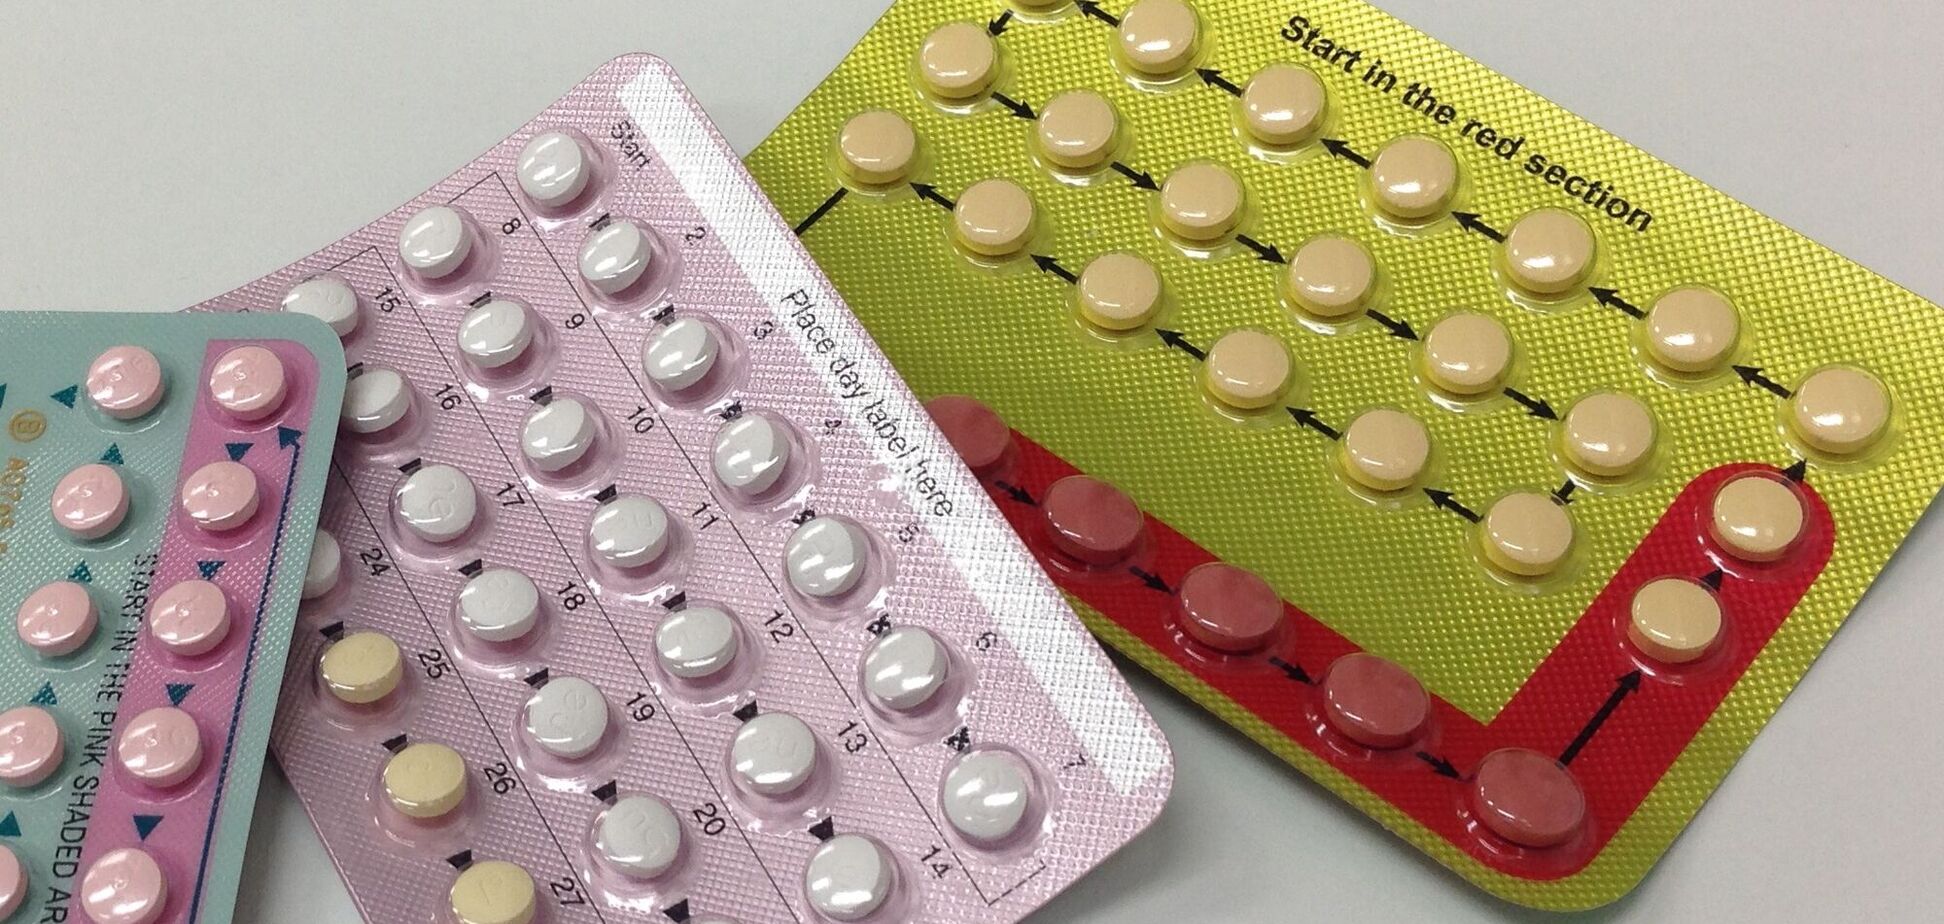 Оральные контрацептивы могут быть небезопасными